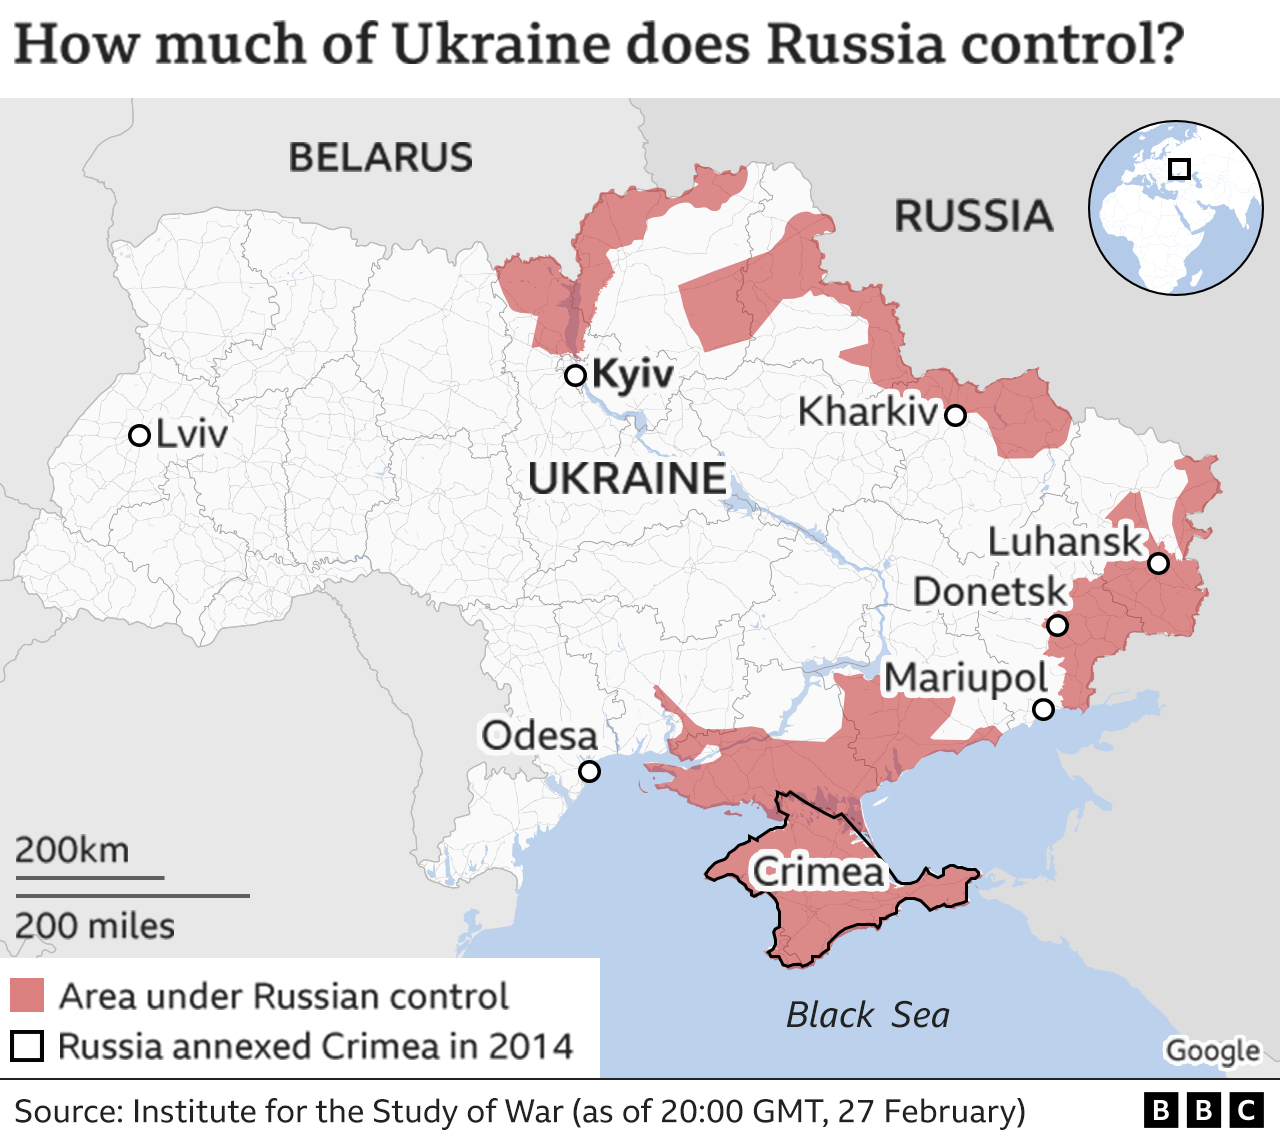 Nga gia tăng đe dọa miền nam Ukraine: Nhằm giúp quý vị hiểu rõ hơn về tình hình đang ngày càng căng thẳng ở miền nam Ukraine, chúng ta hãy cùng xem hình ảnh liên quan đến việc Nga gia tăng đe dọa khu vực này.